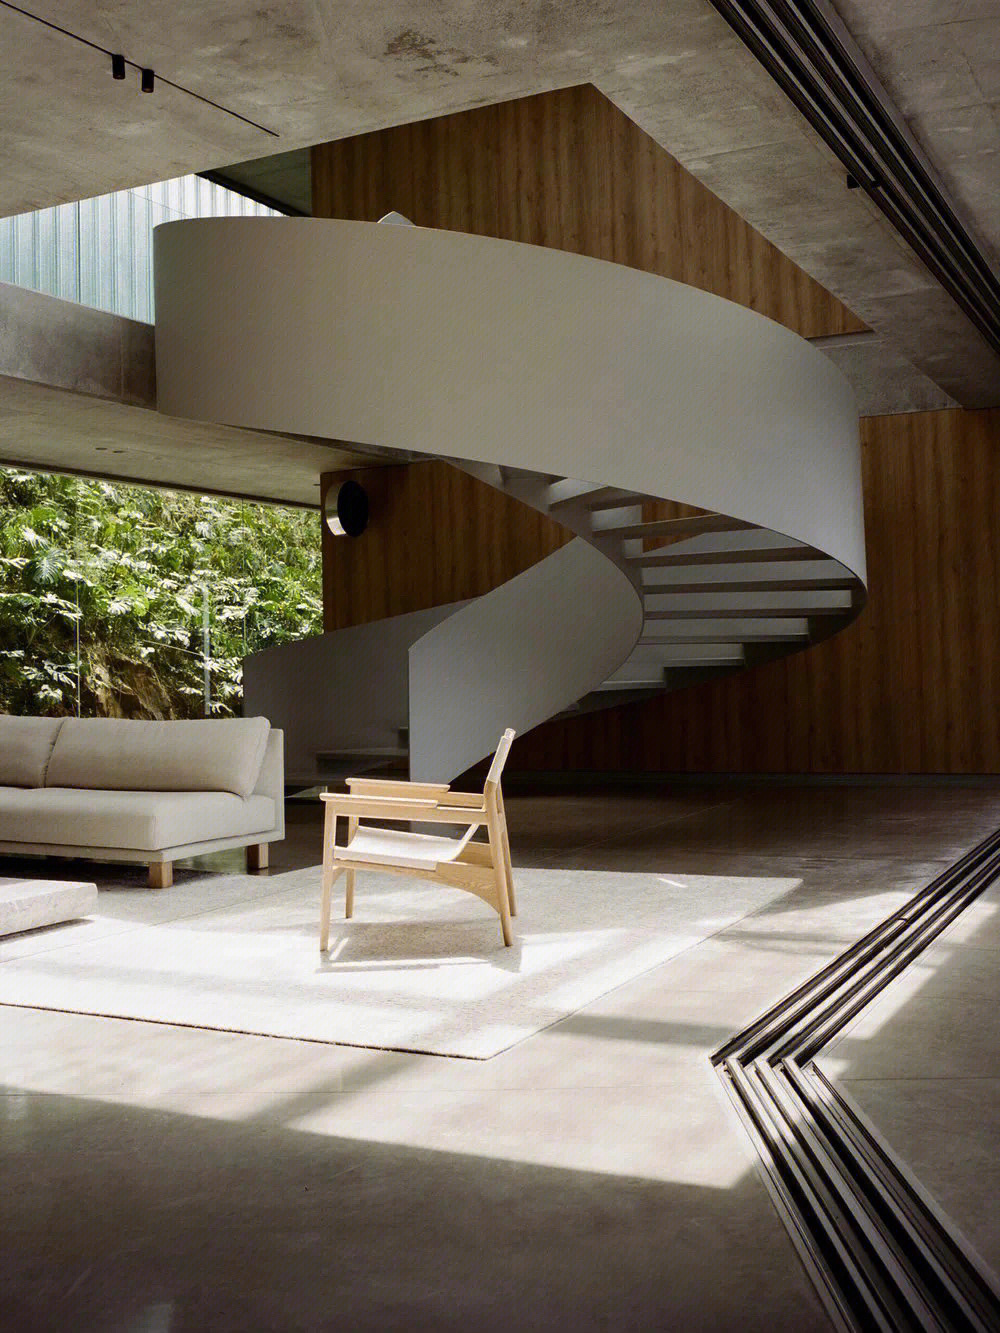 室内设计案例分享静谧别墅空间风格禅意